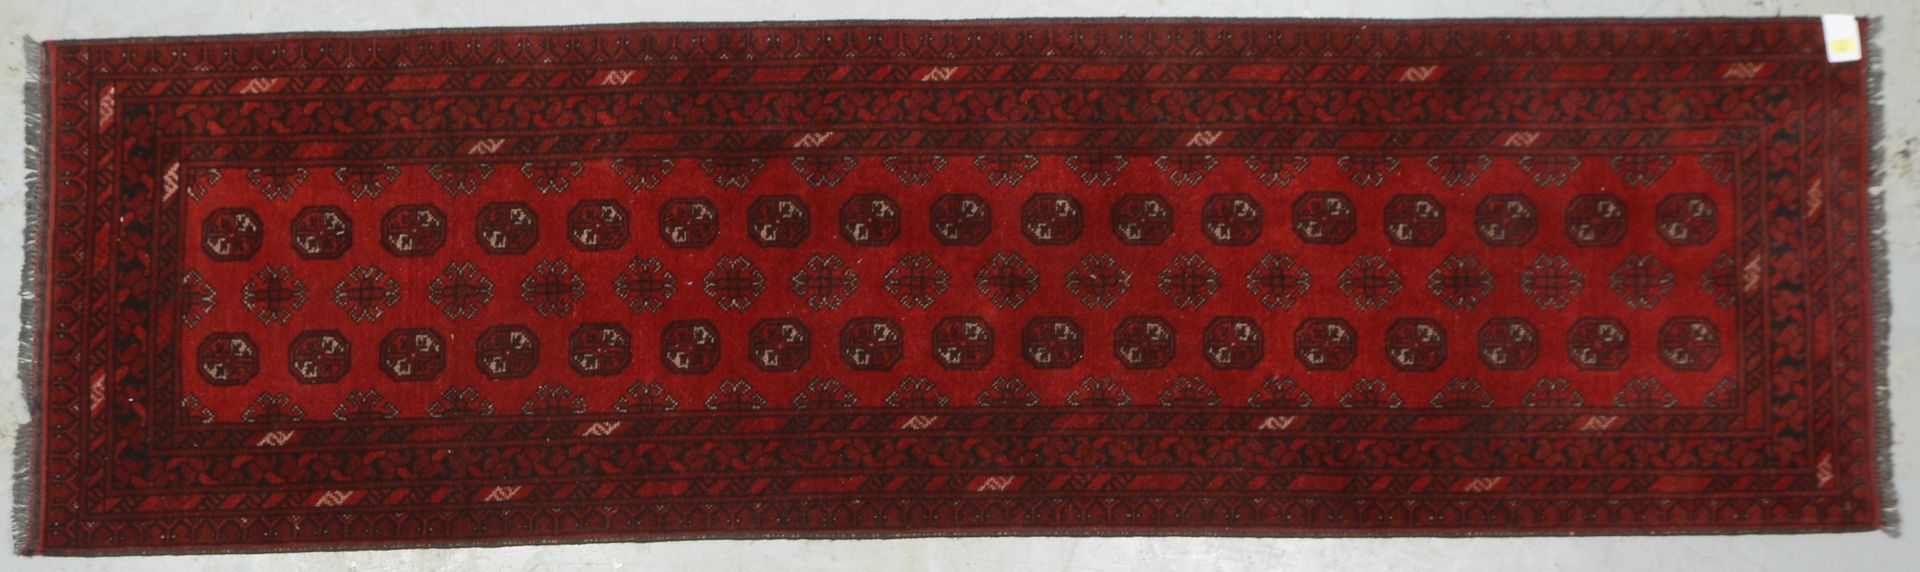 Turkmen-Galerie, Wolle auf Wolle, Flor in gutem Zustand; Maße 291 x 83 cm